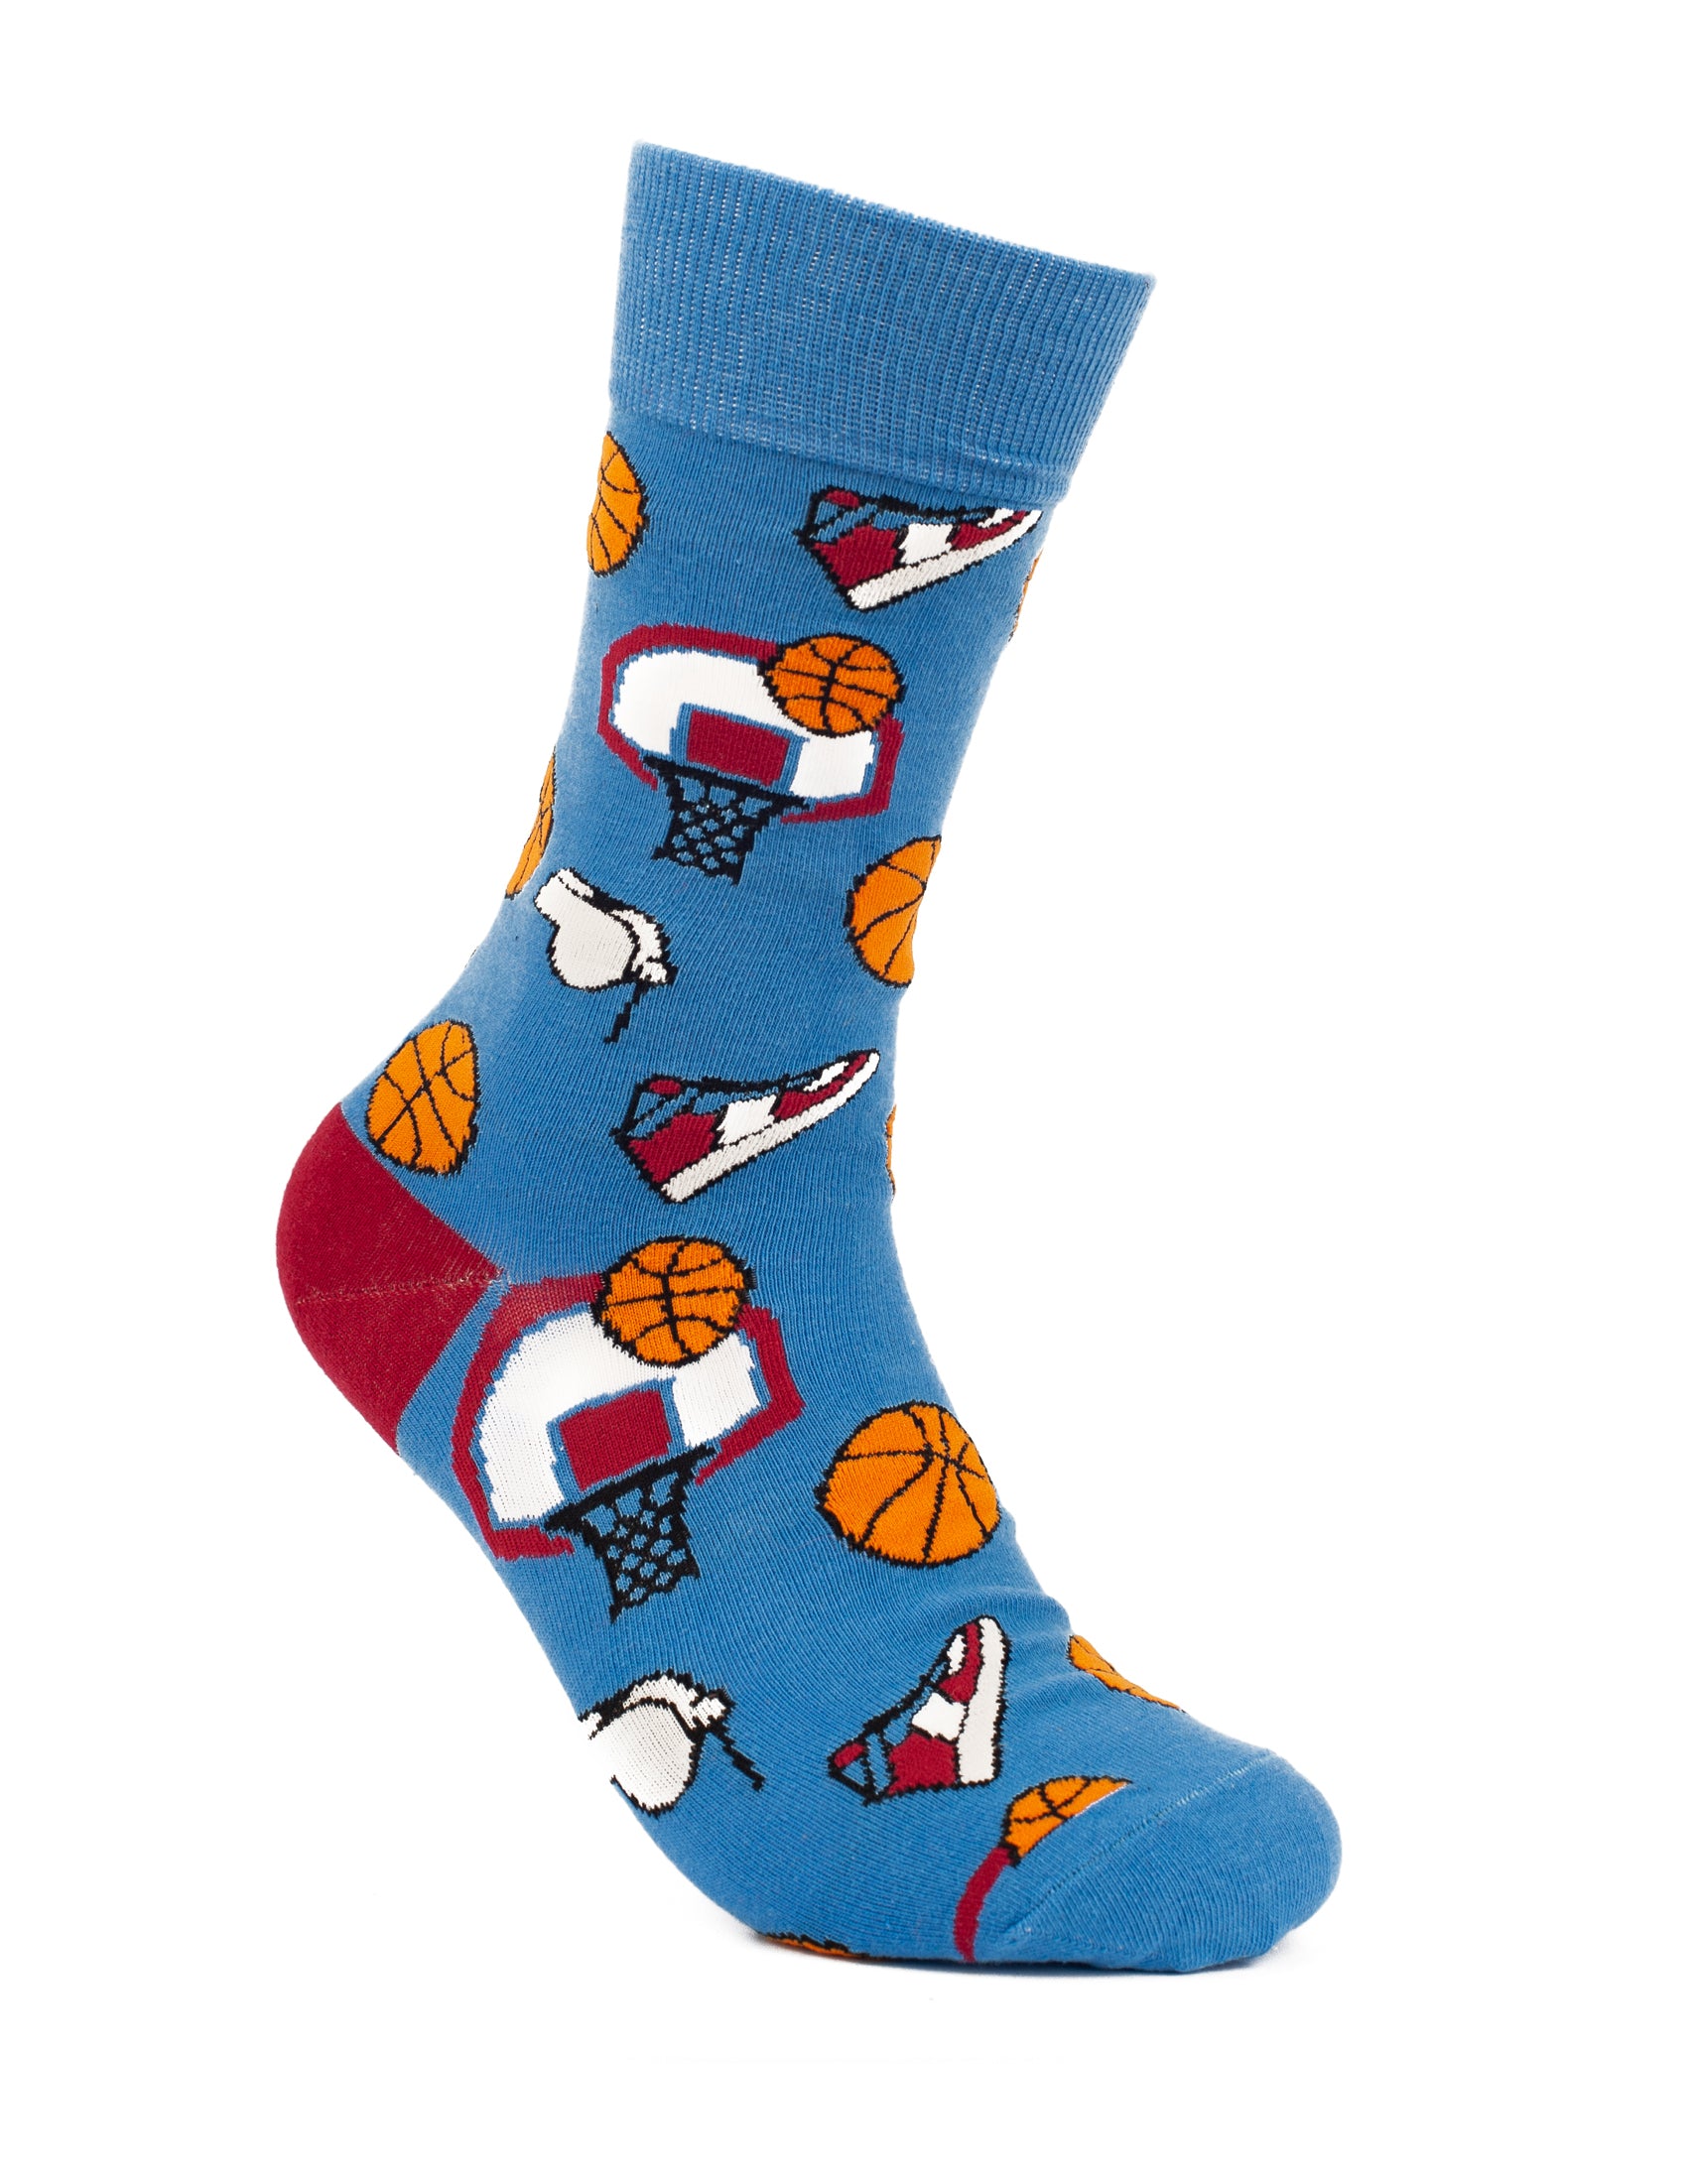 Blue Basketball crew socks for men